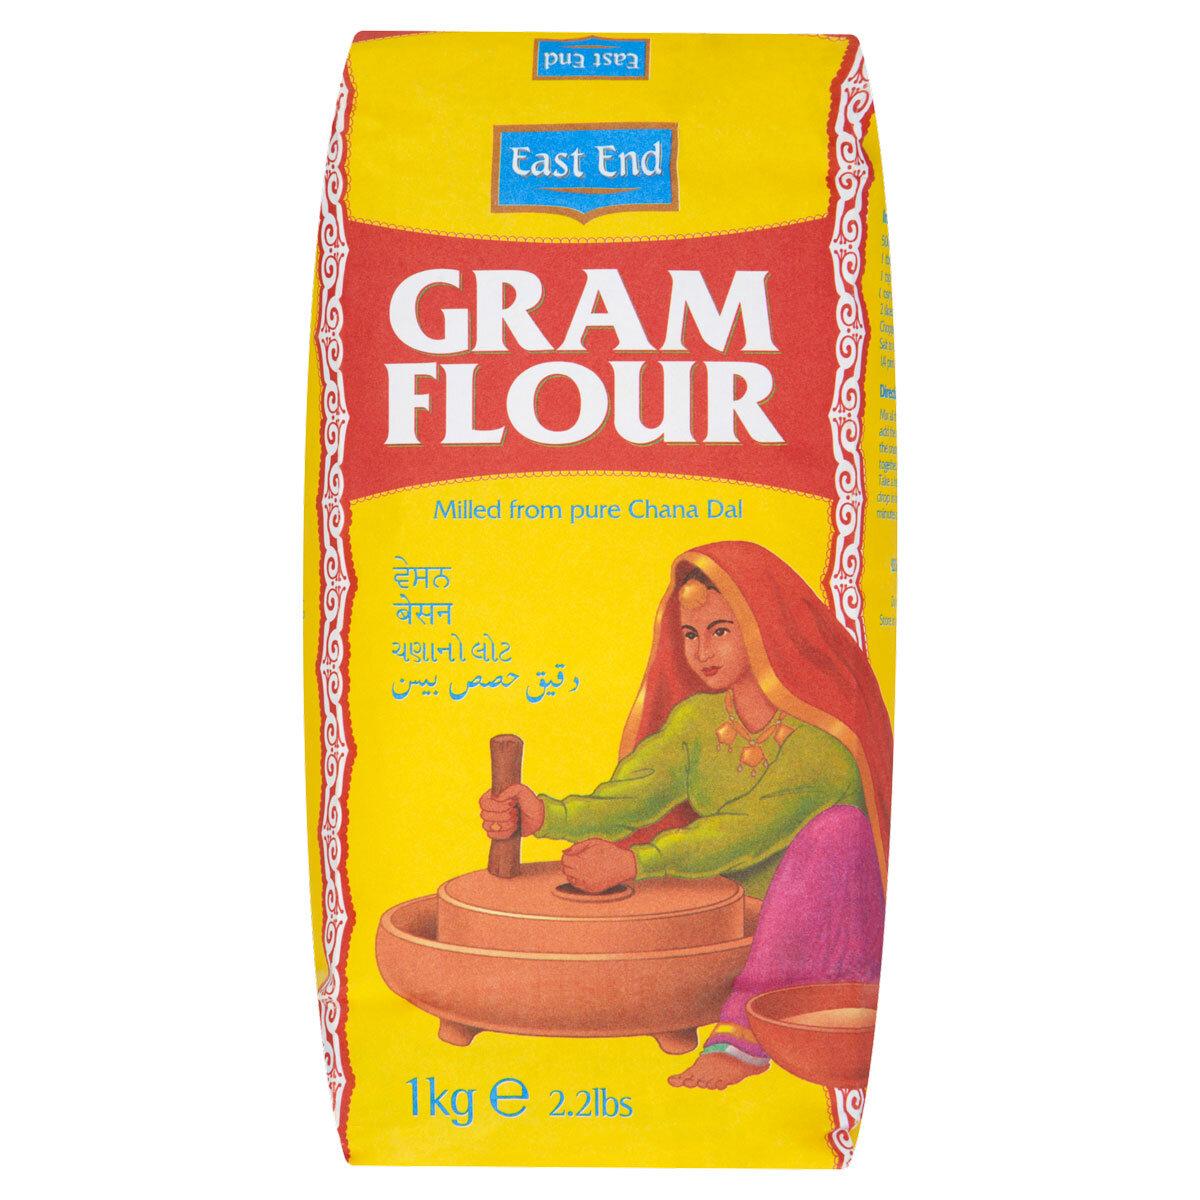 East End Gram Flour, 1kg